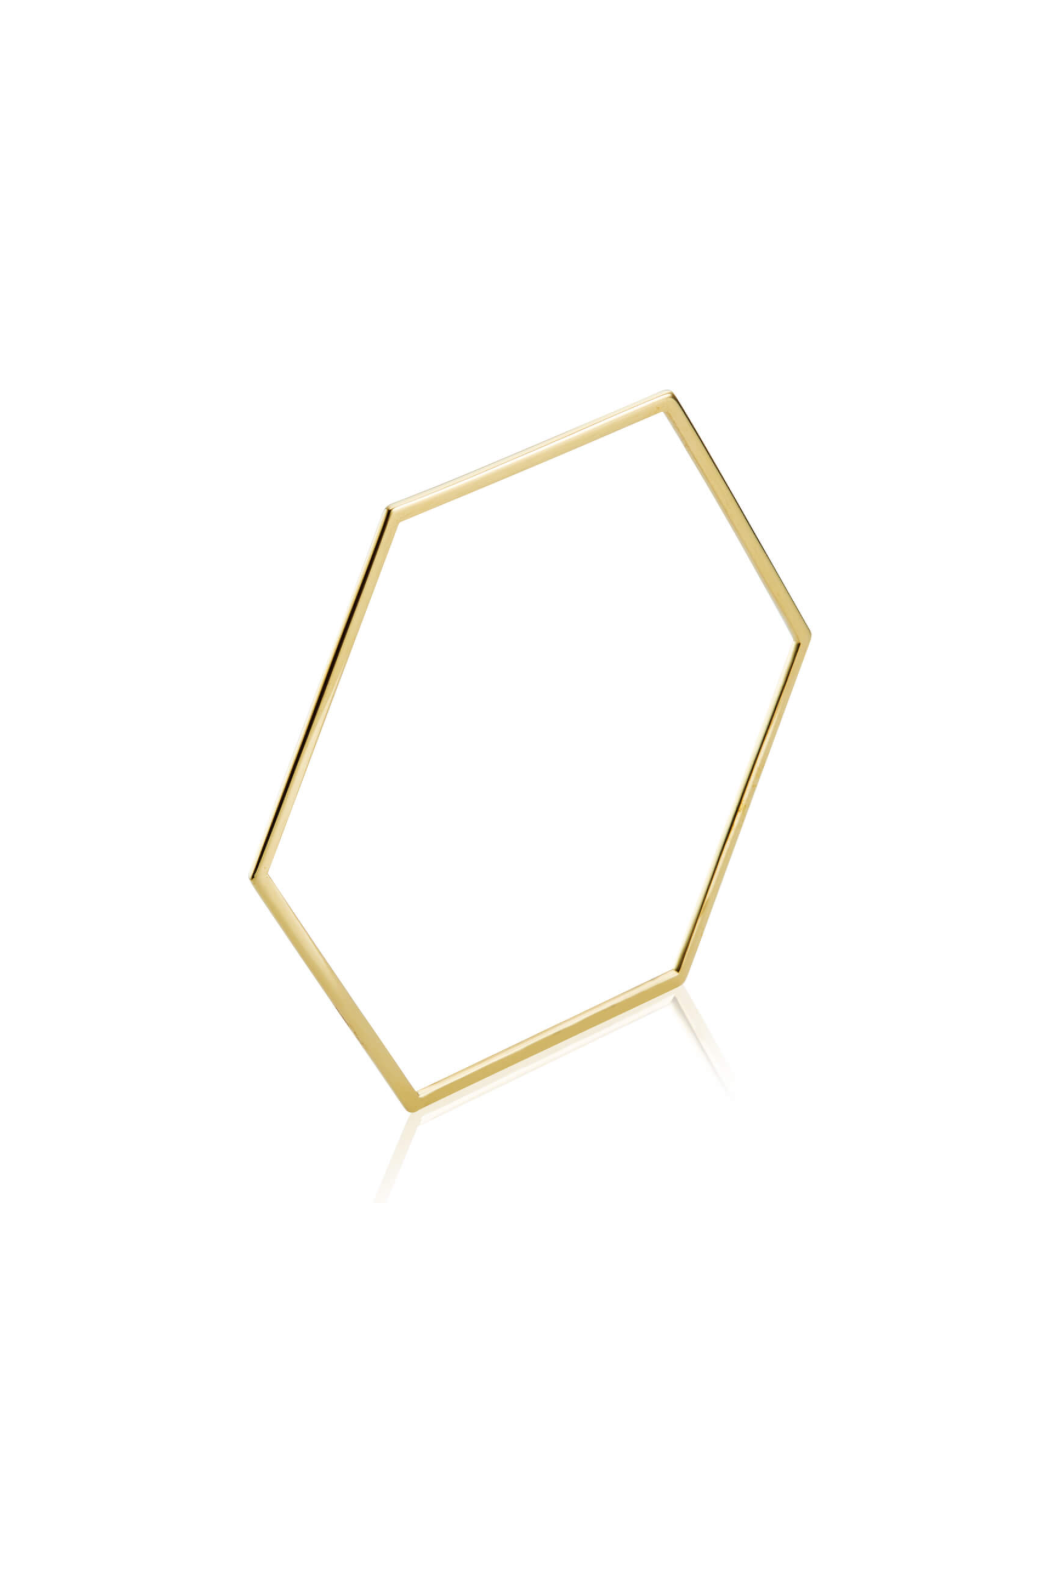 Hexagonal bangle